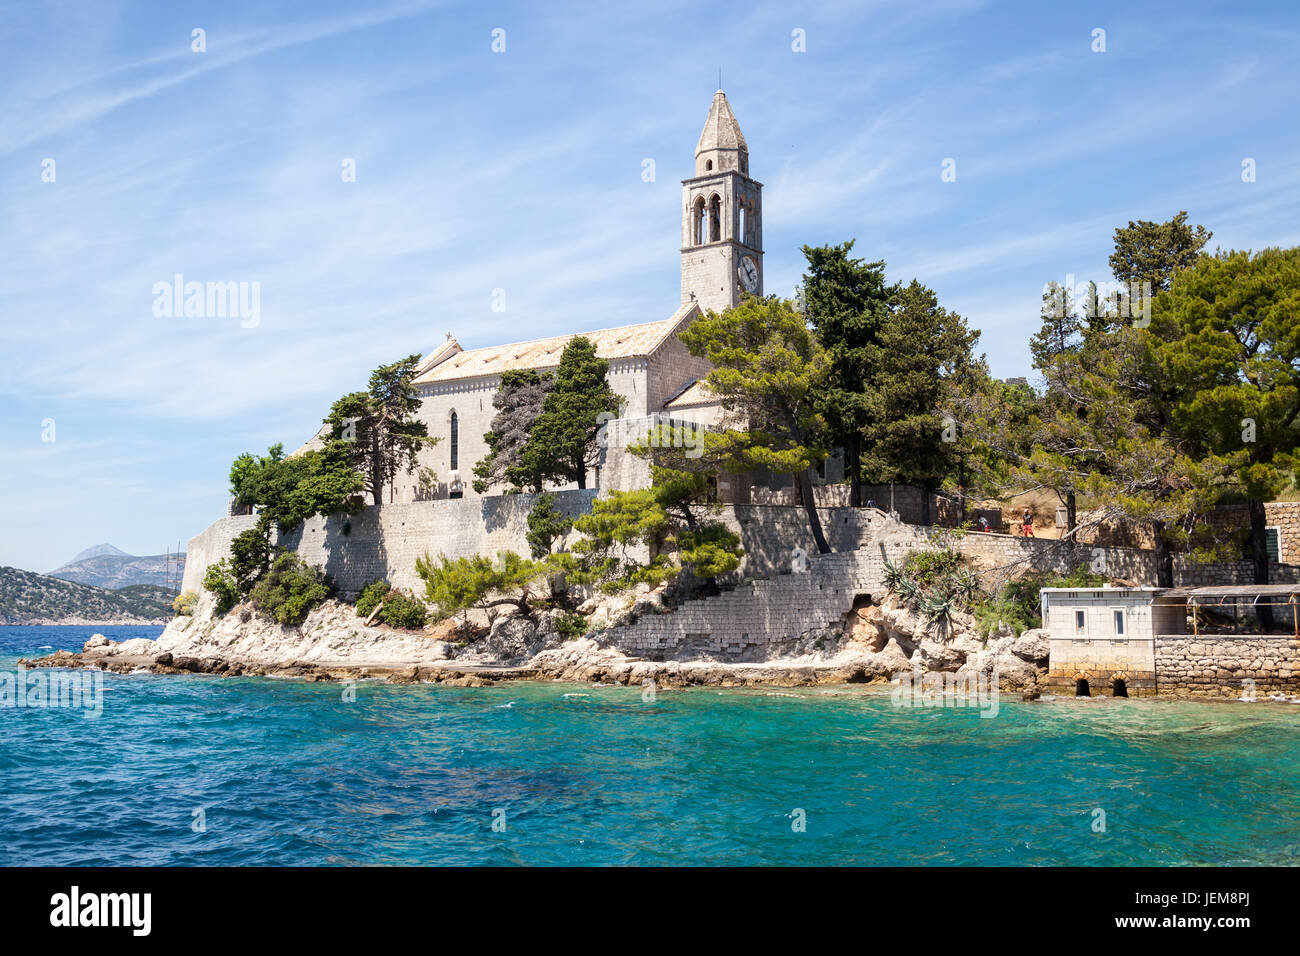 La Iglesia de Santa María y el monasterio franciscano en la isla de Lopud, en el sur de Dalmacia, Croacia Foto de stock